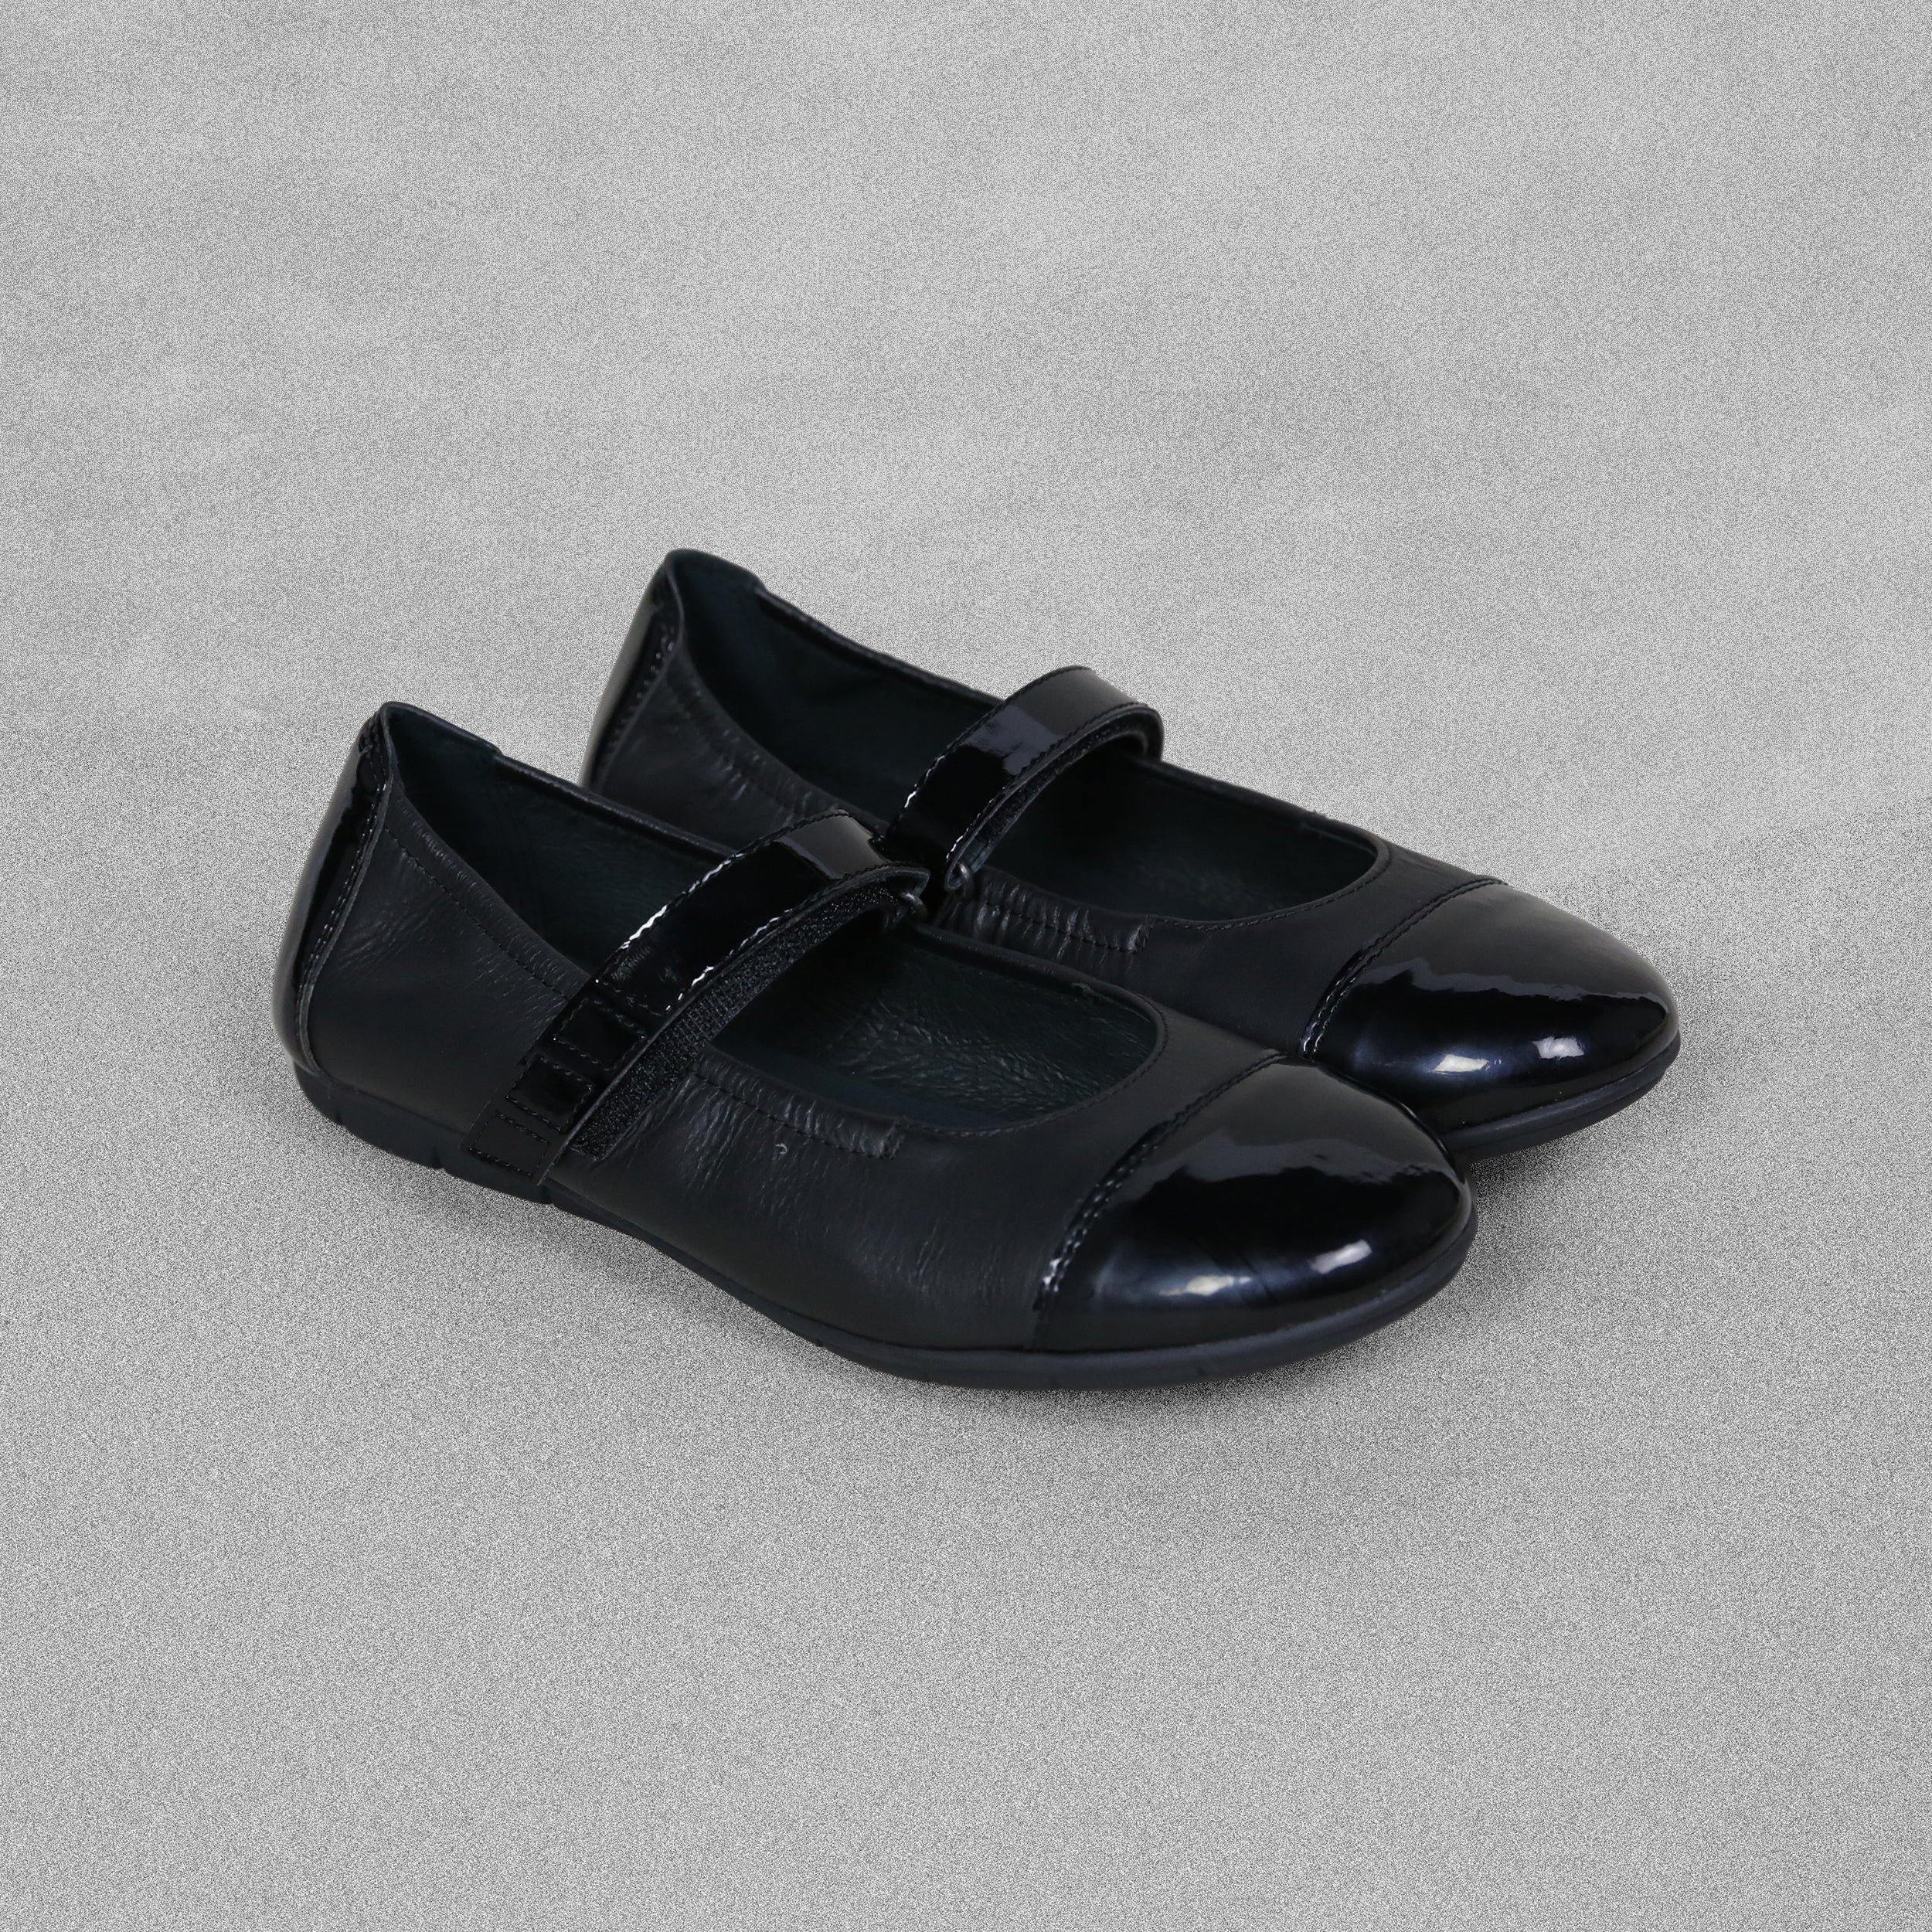 Superfit Girls Black Leather Mary Jane Shoes - UK Size 4